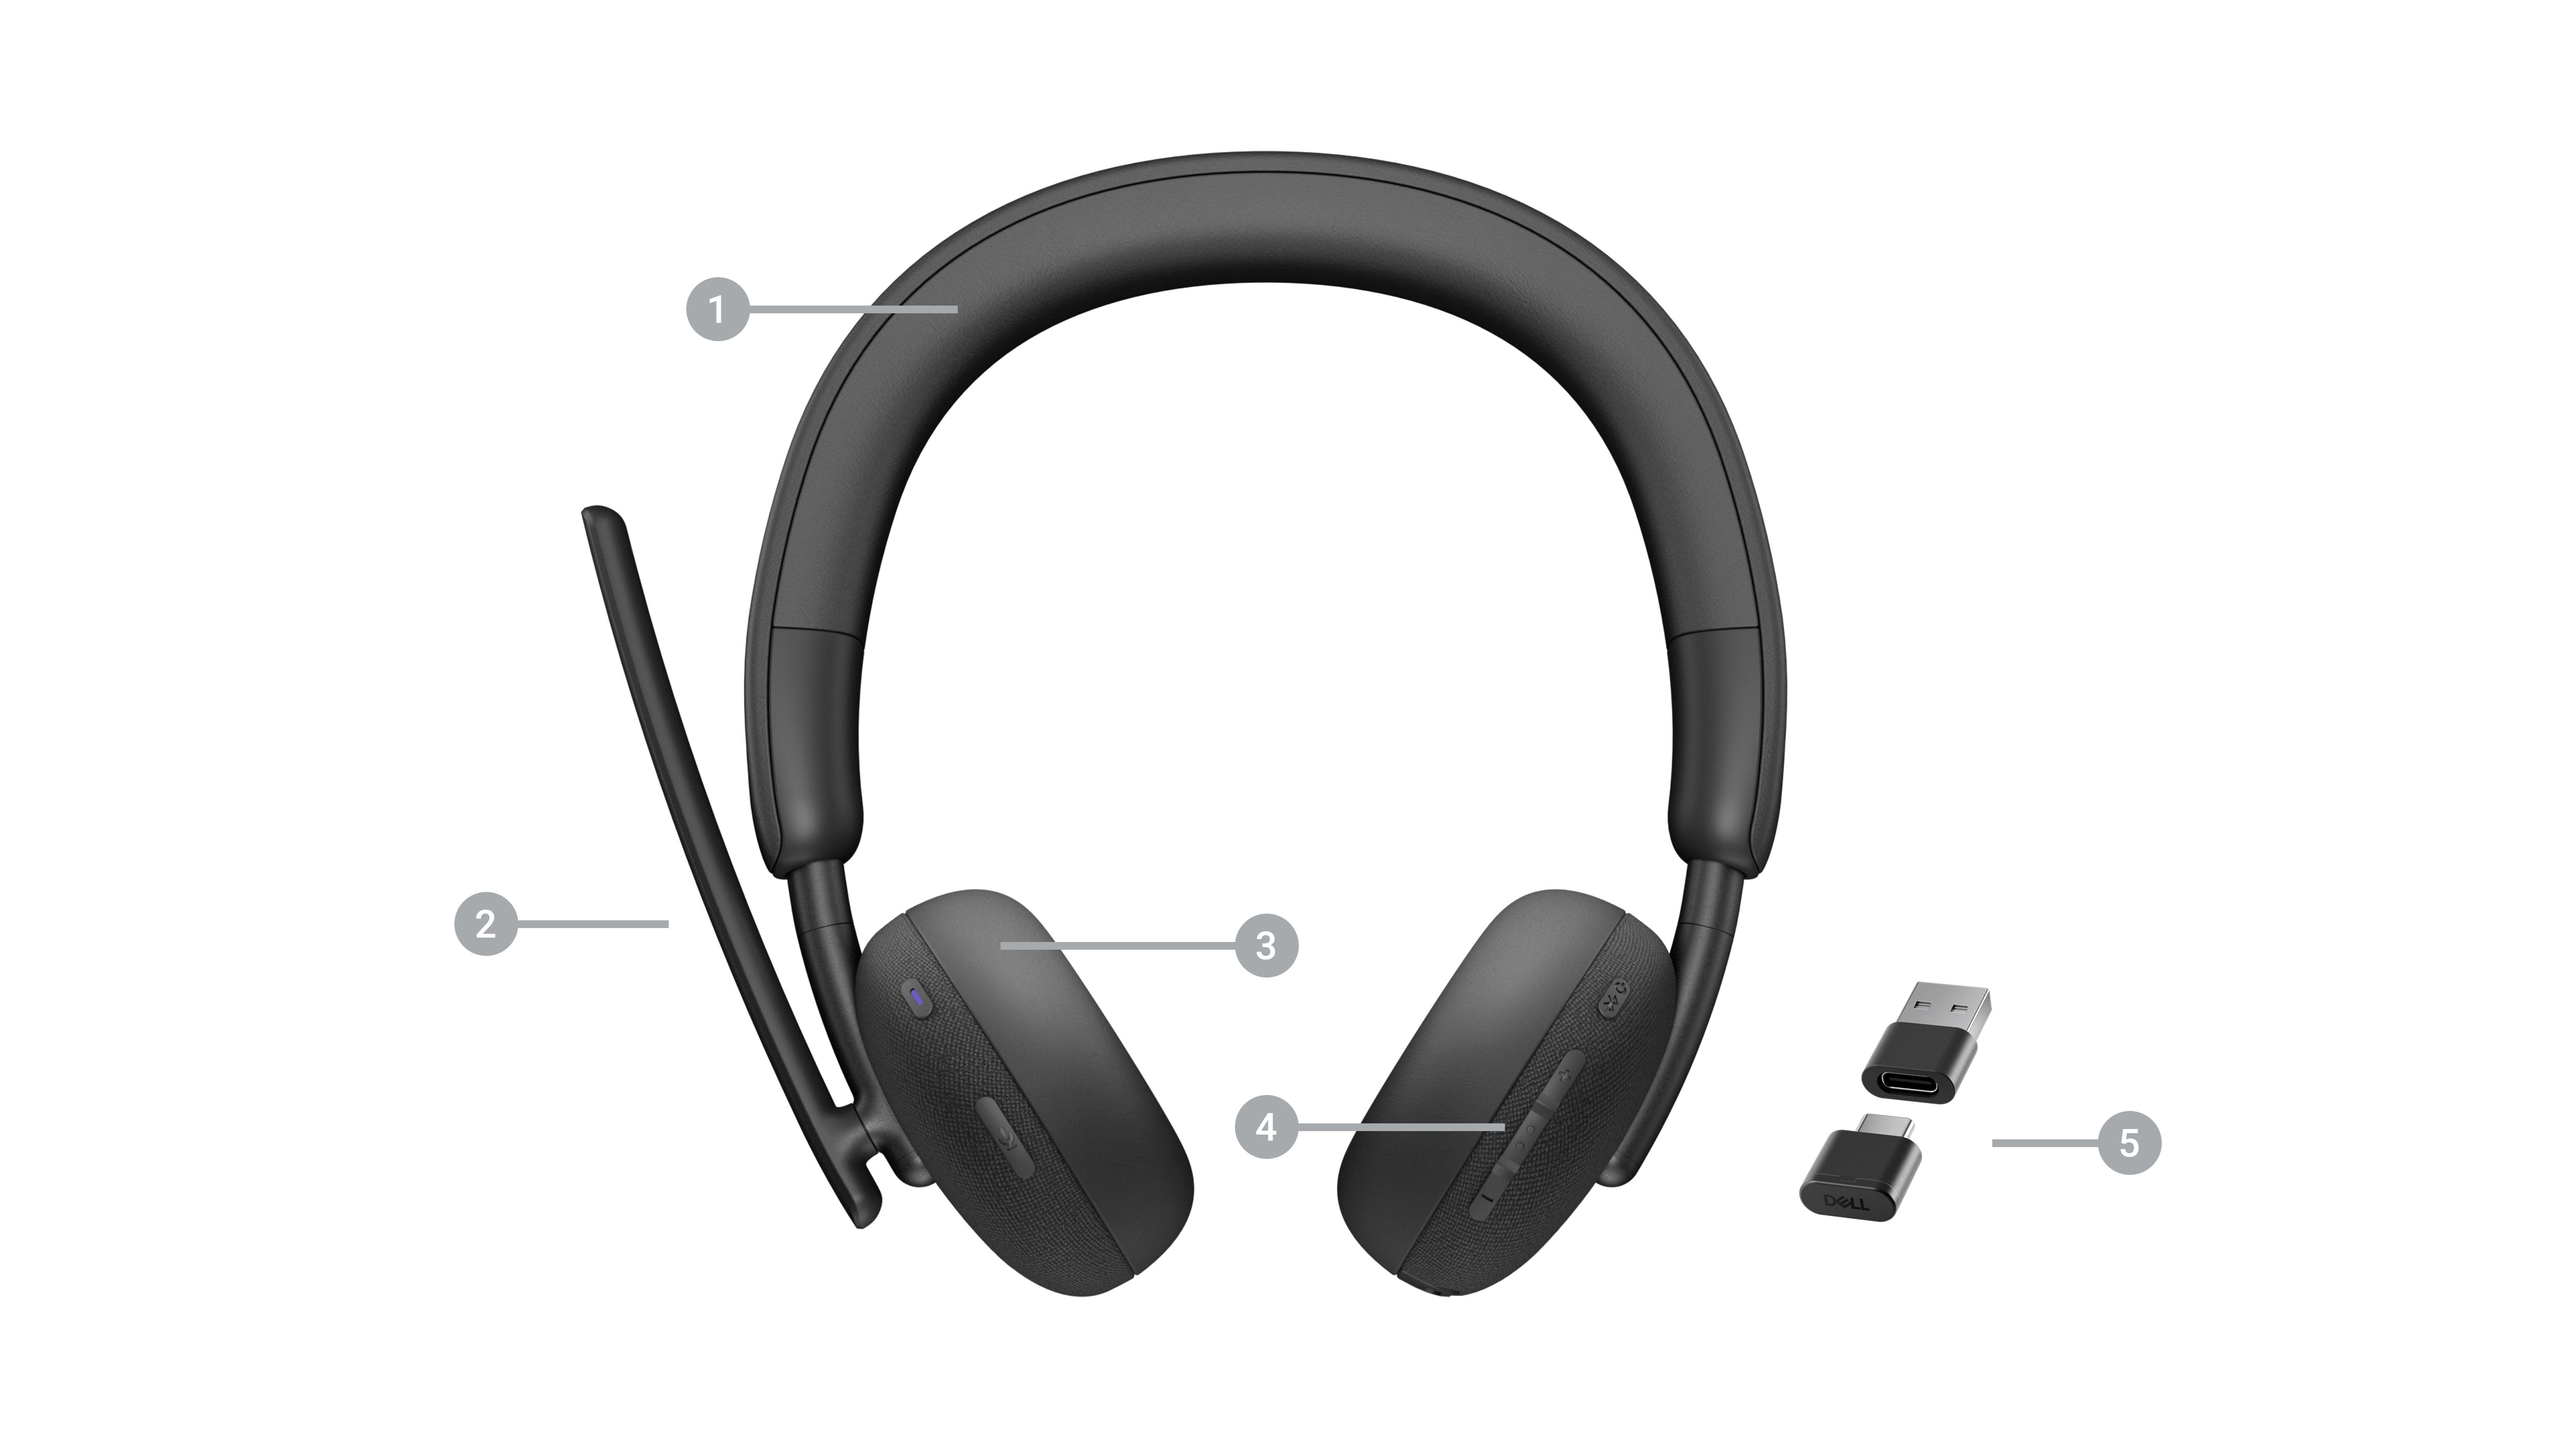 Dell kabelloses Headset – WL3024 mit Zahlen von 1 bis 5 für die Produktmerkmale